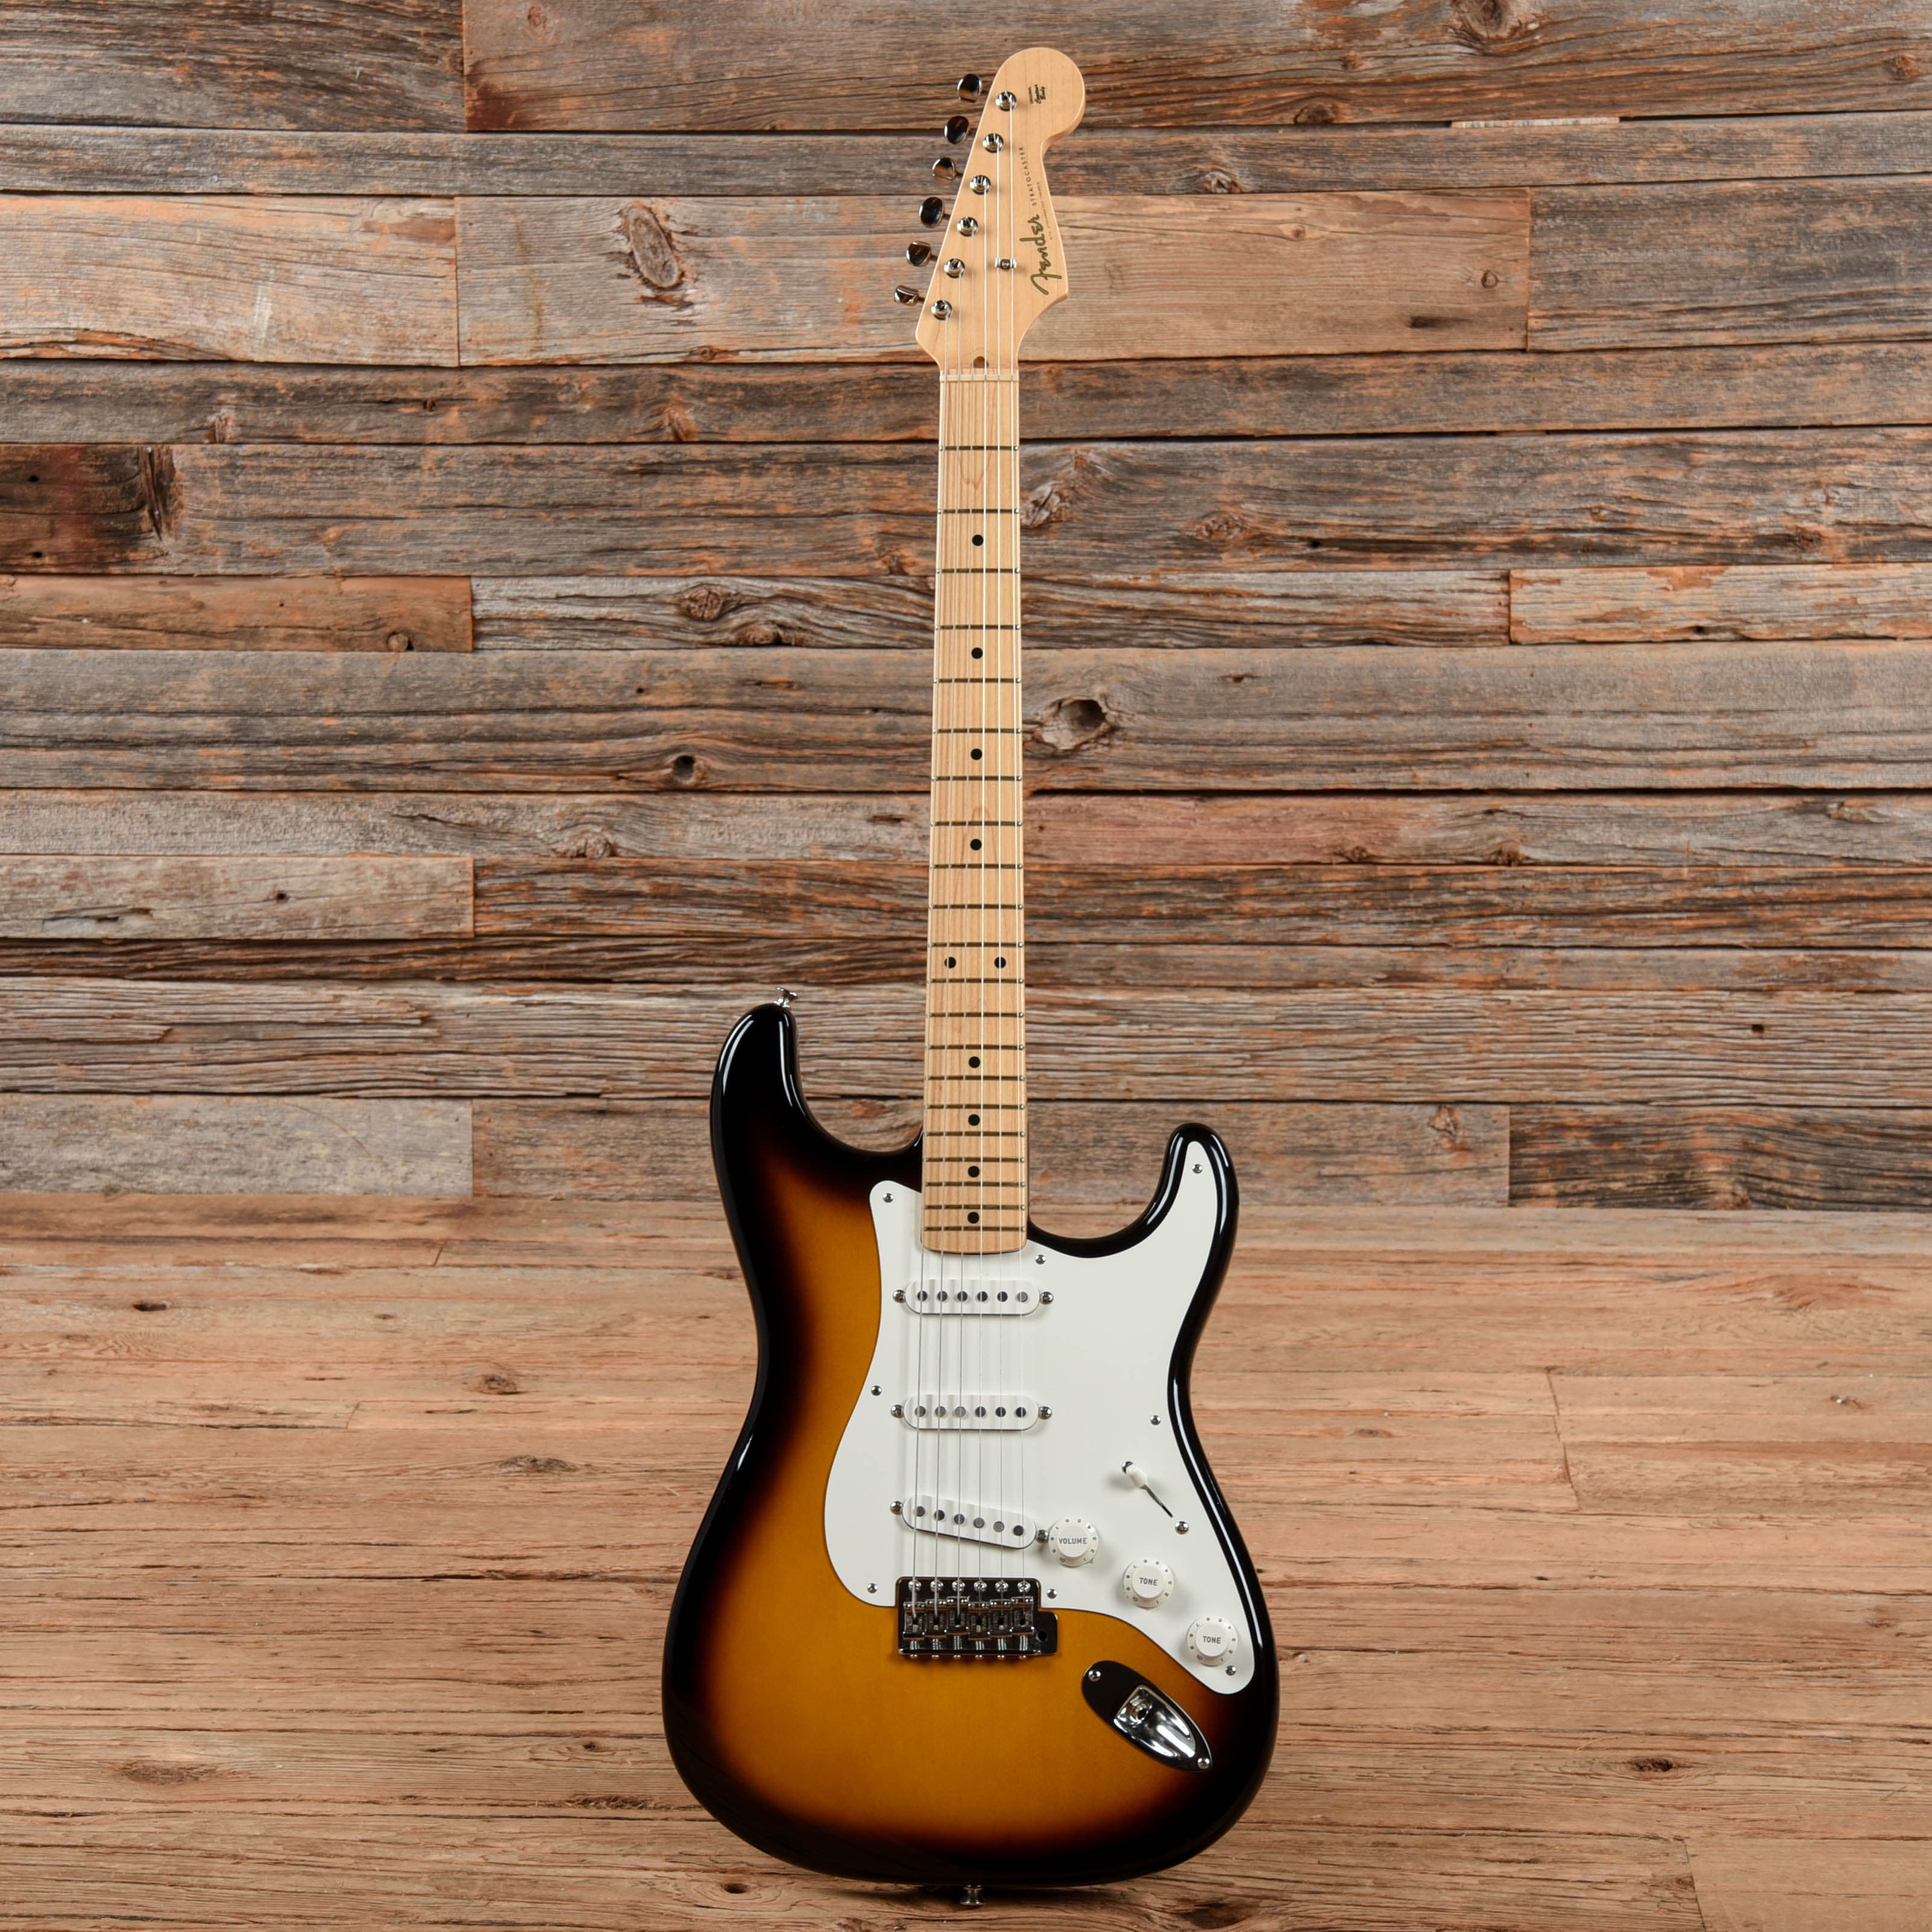 Fender American Vintage 56 Stratocaster 2 Color Sunburst 2012 Electric Guitars / Solid Body